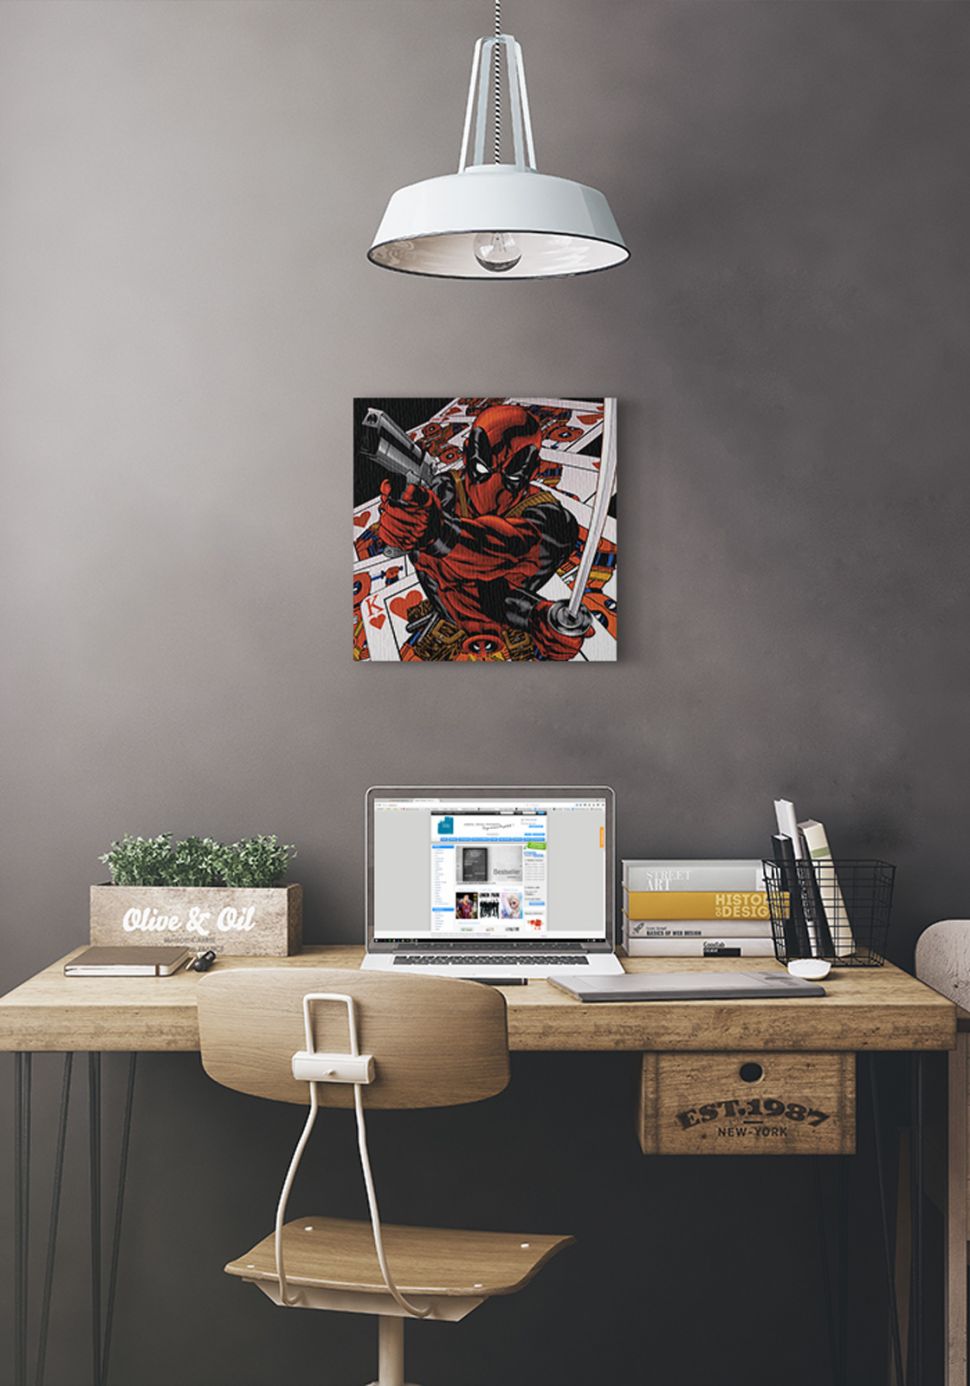 Obraz Deadpoola na tle kart powieszony na szarej ścianie pod białą lampą nad biurkiem z laptopem i książkami